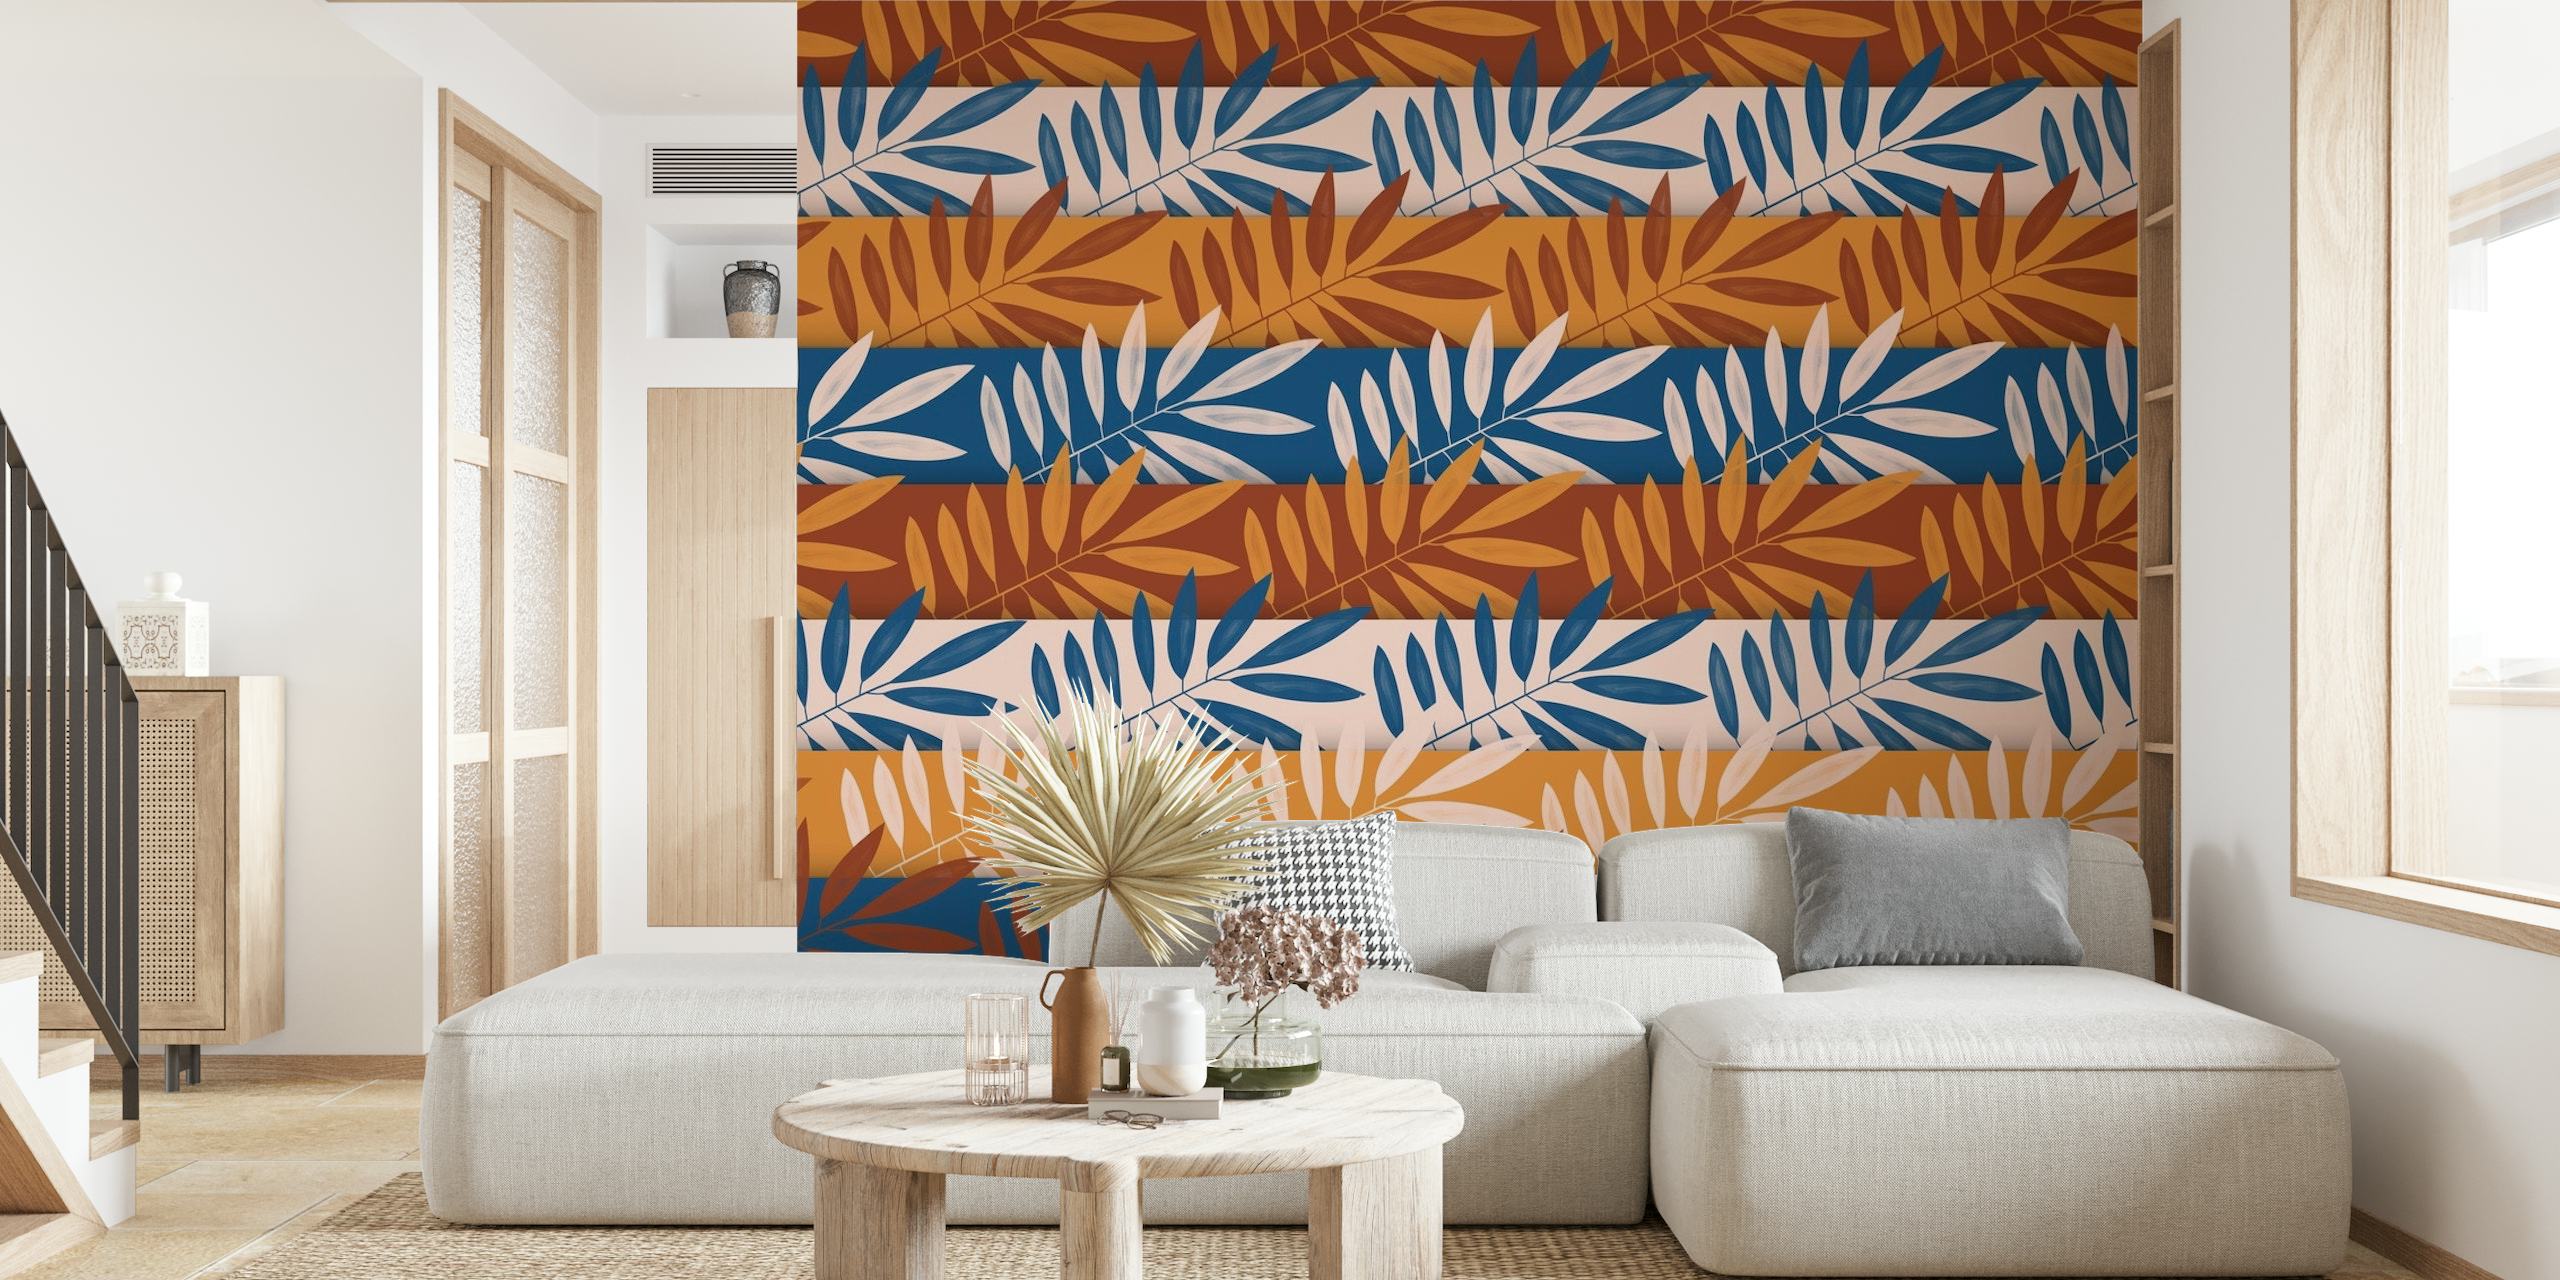 Tapete mit abstraktem Laubmuster von Sahara Art in den Farben Terrakotta, Blau und Beige.